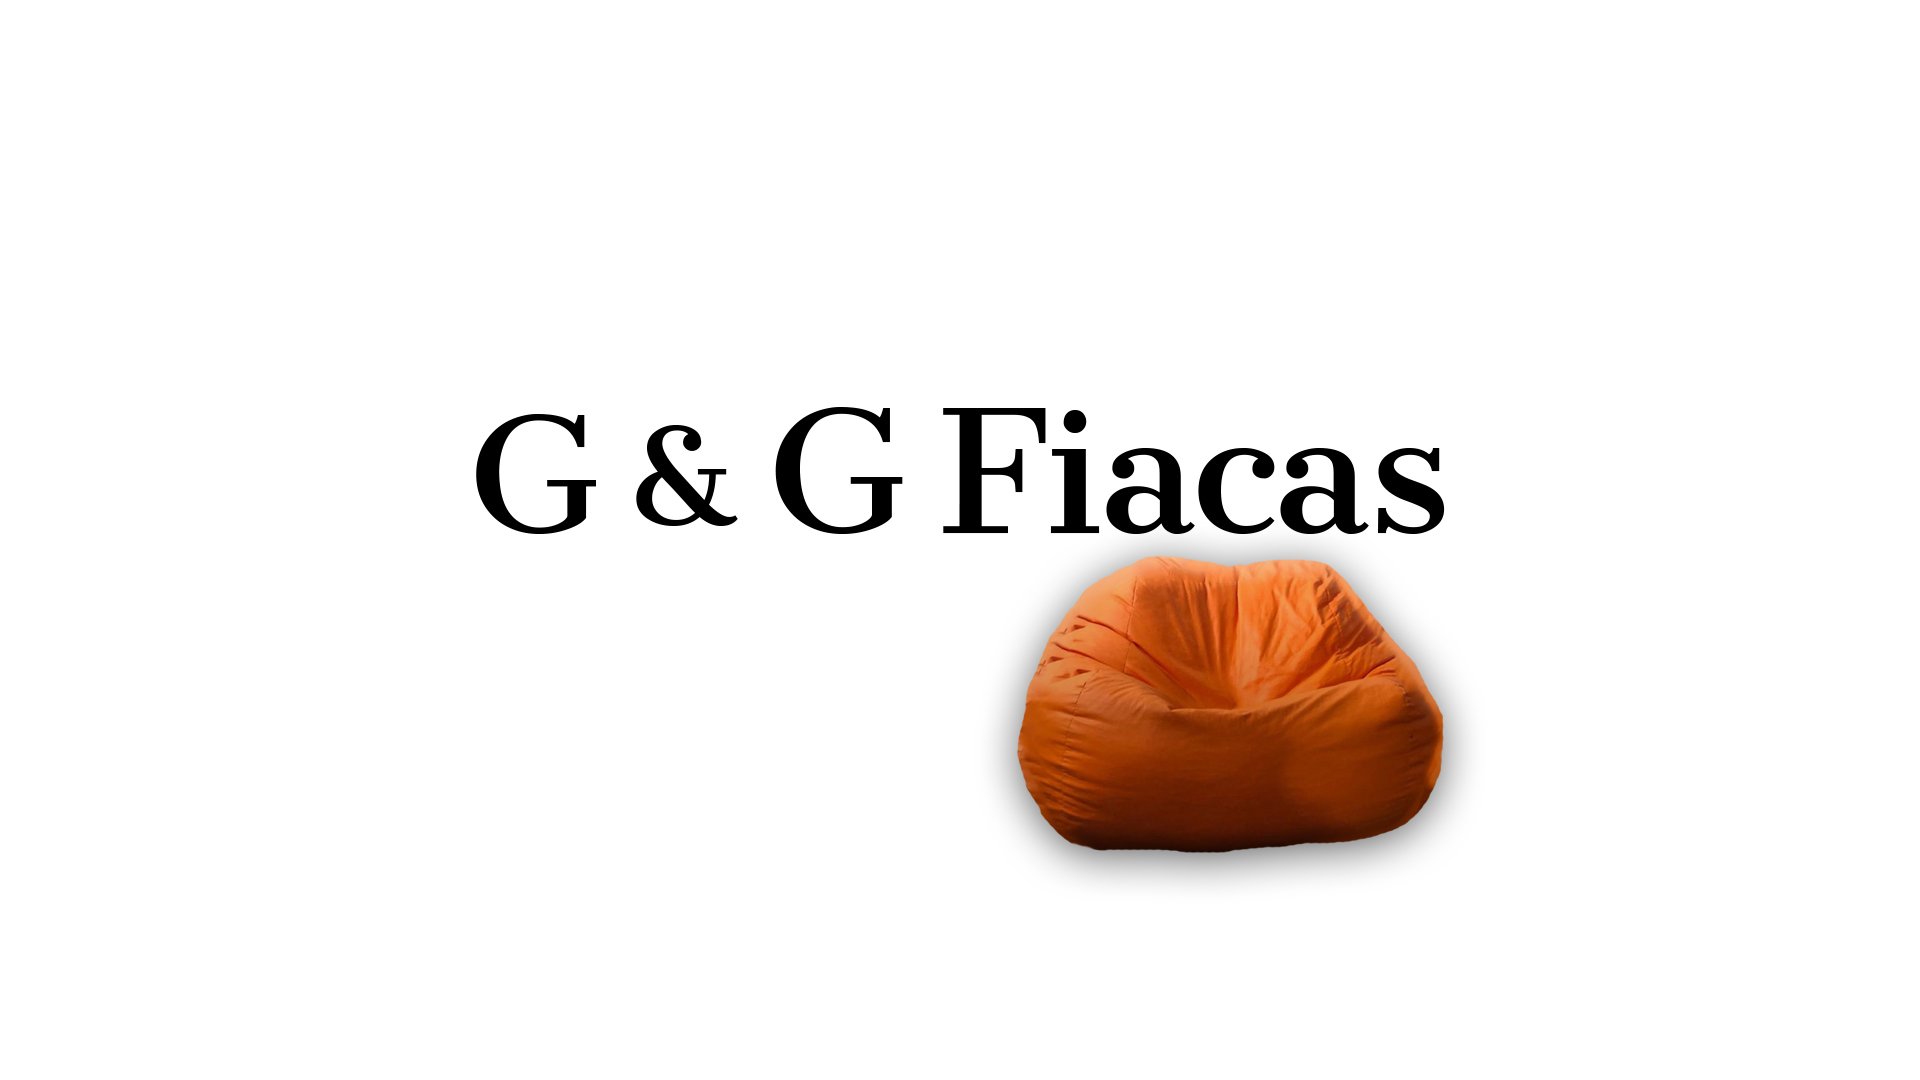 G y G Fiacas